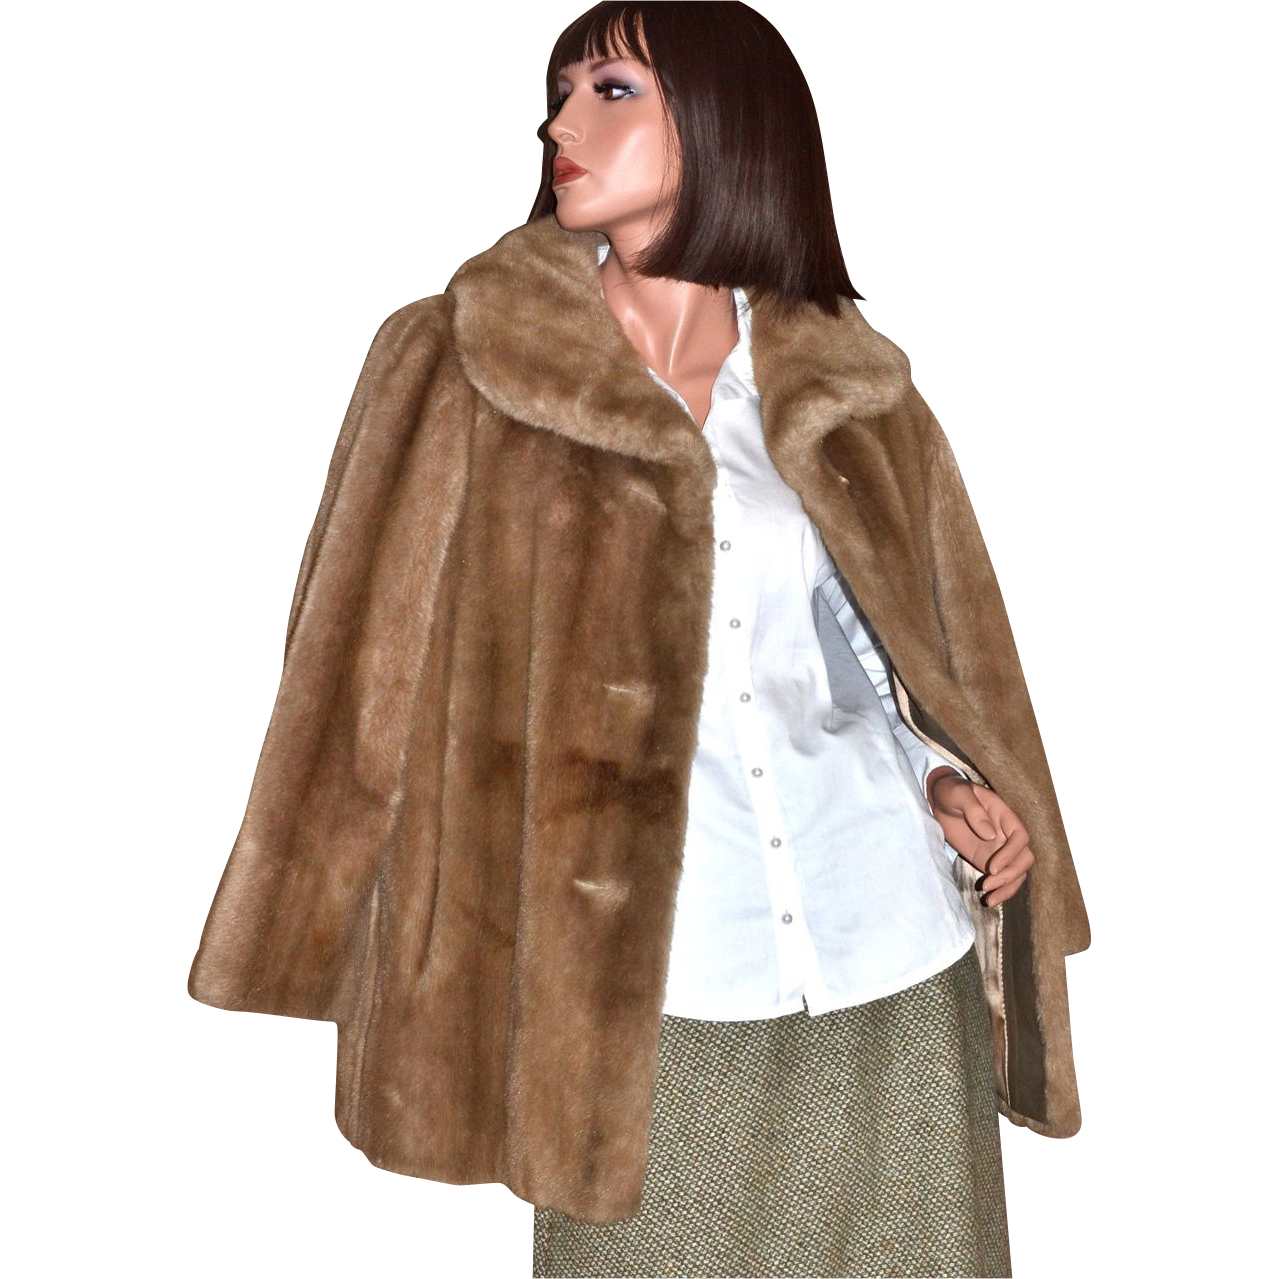 Fur Coat PNG Image